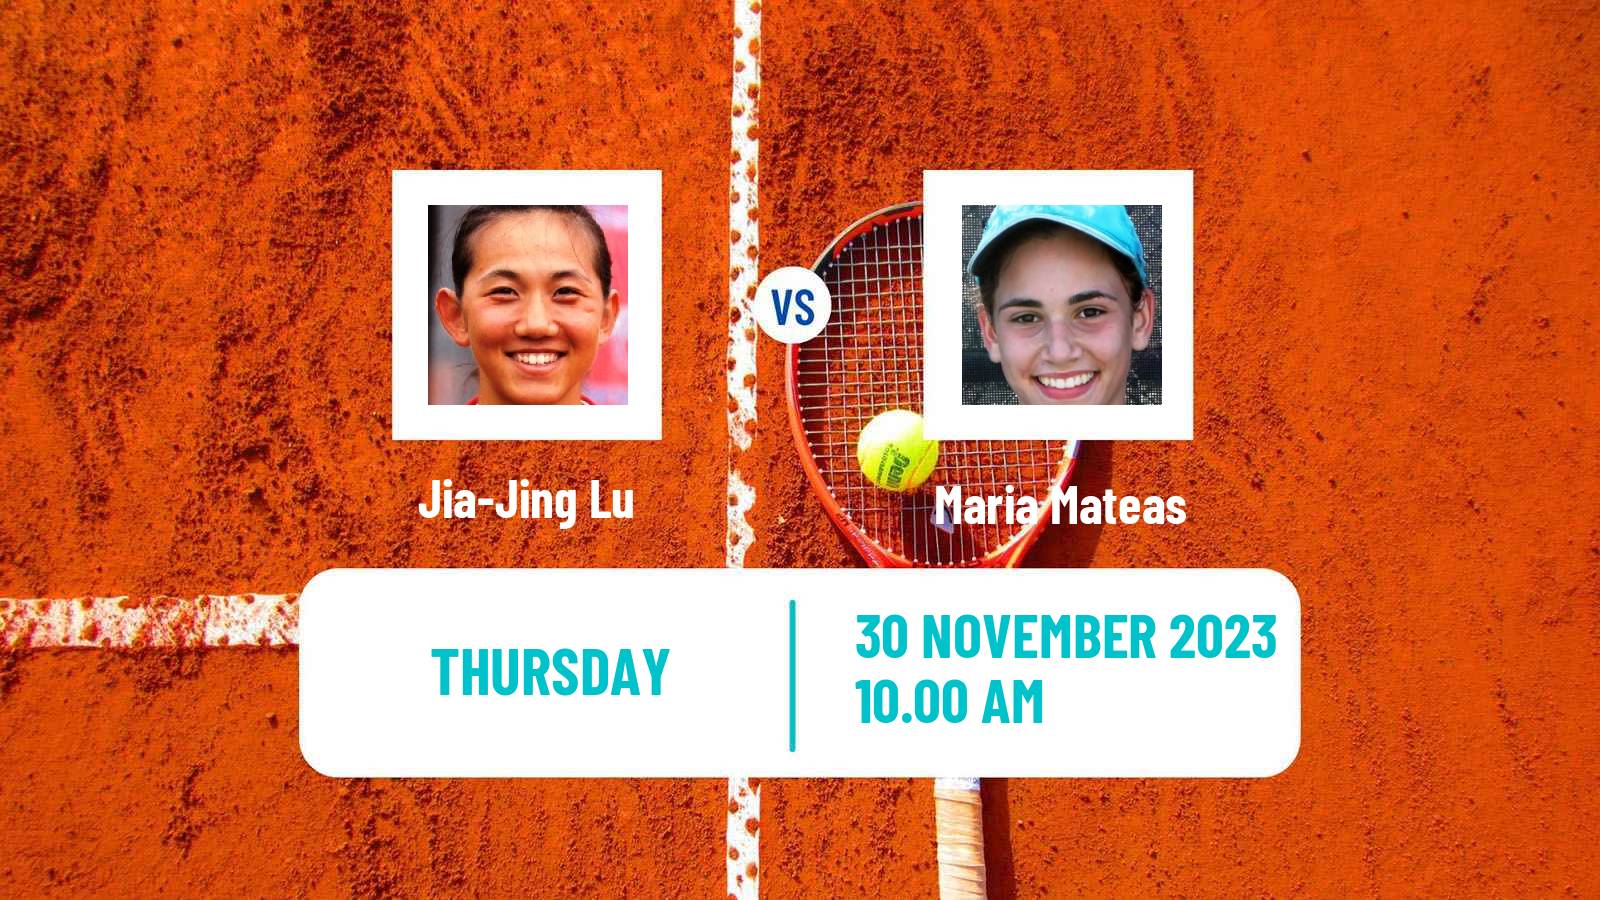 Tennis ITF W40 Veracruz Women Jia-Jing Lu - Maria Mateas